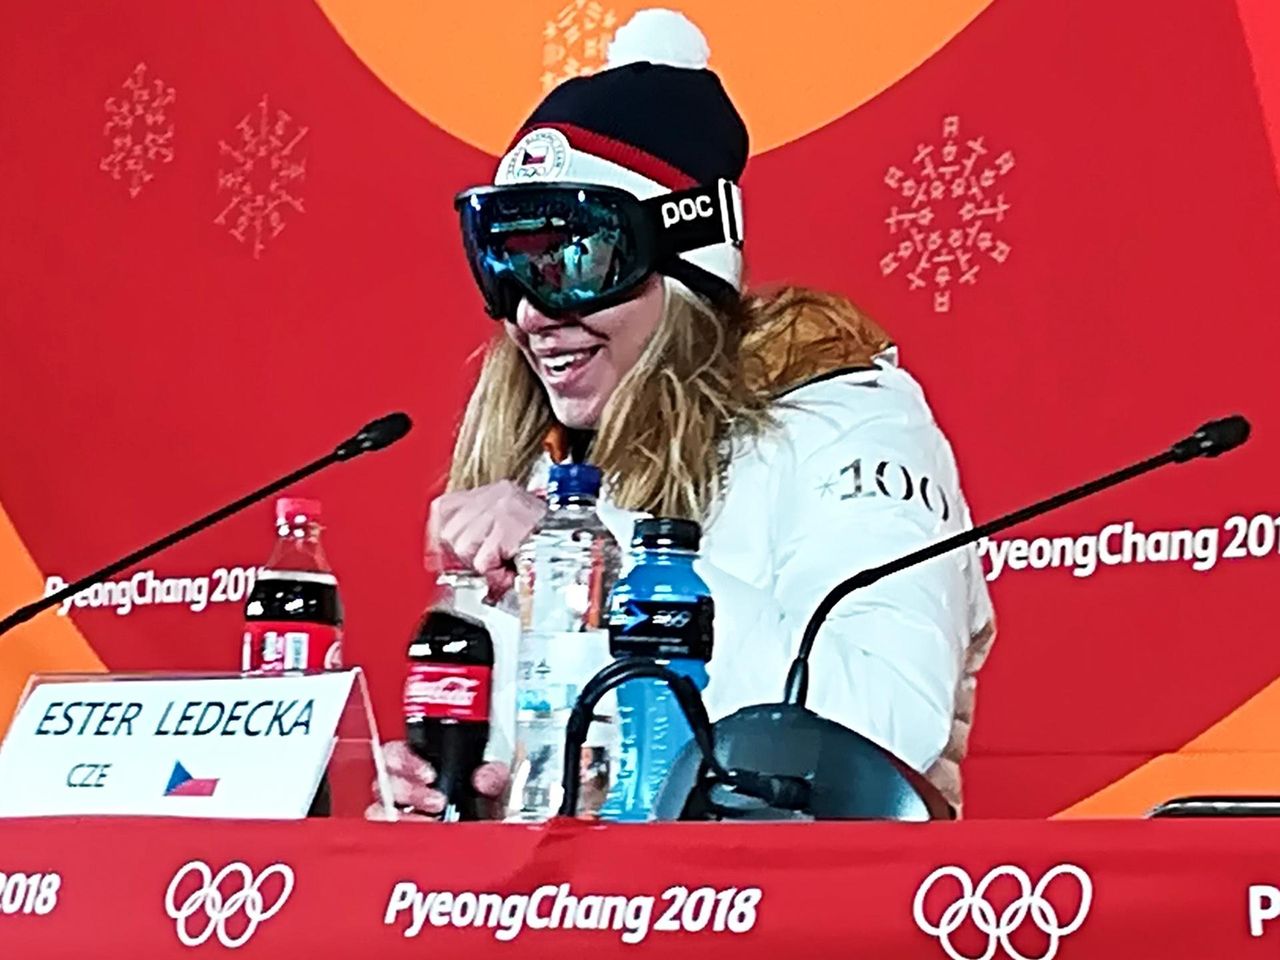 Ester con las gafas puestas durante la rueda de prensa de los Juegos Olímpicos